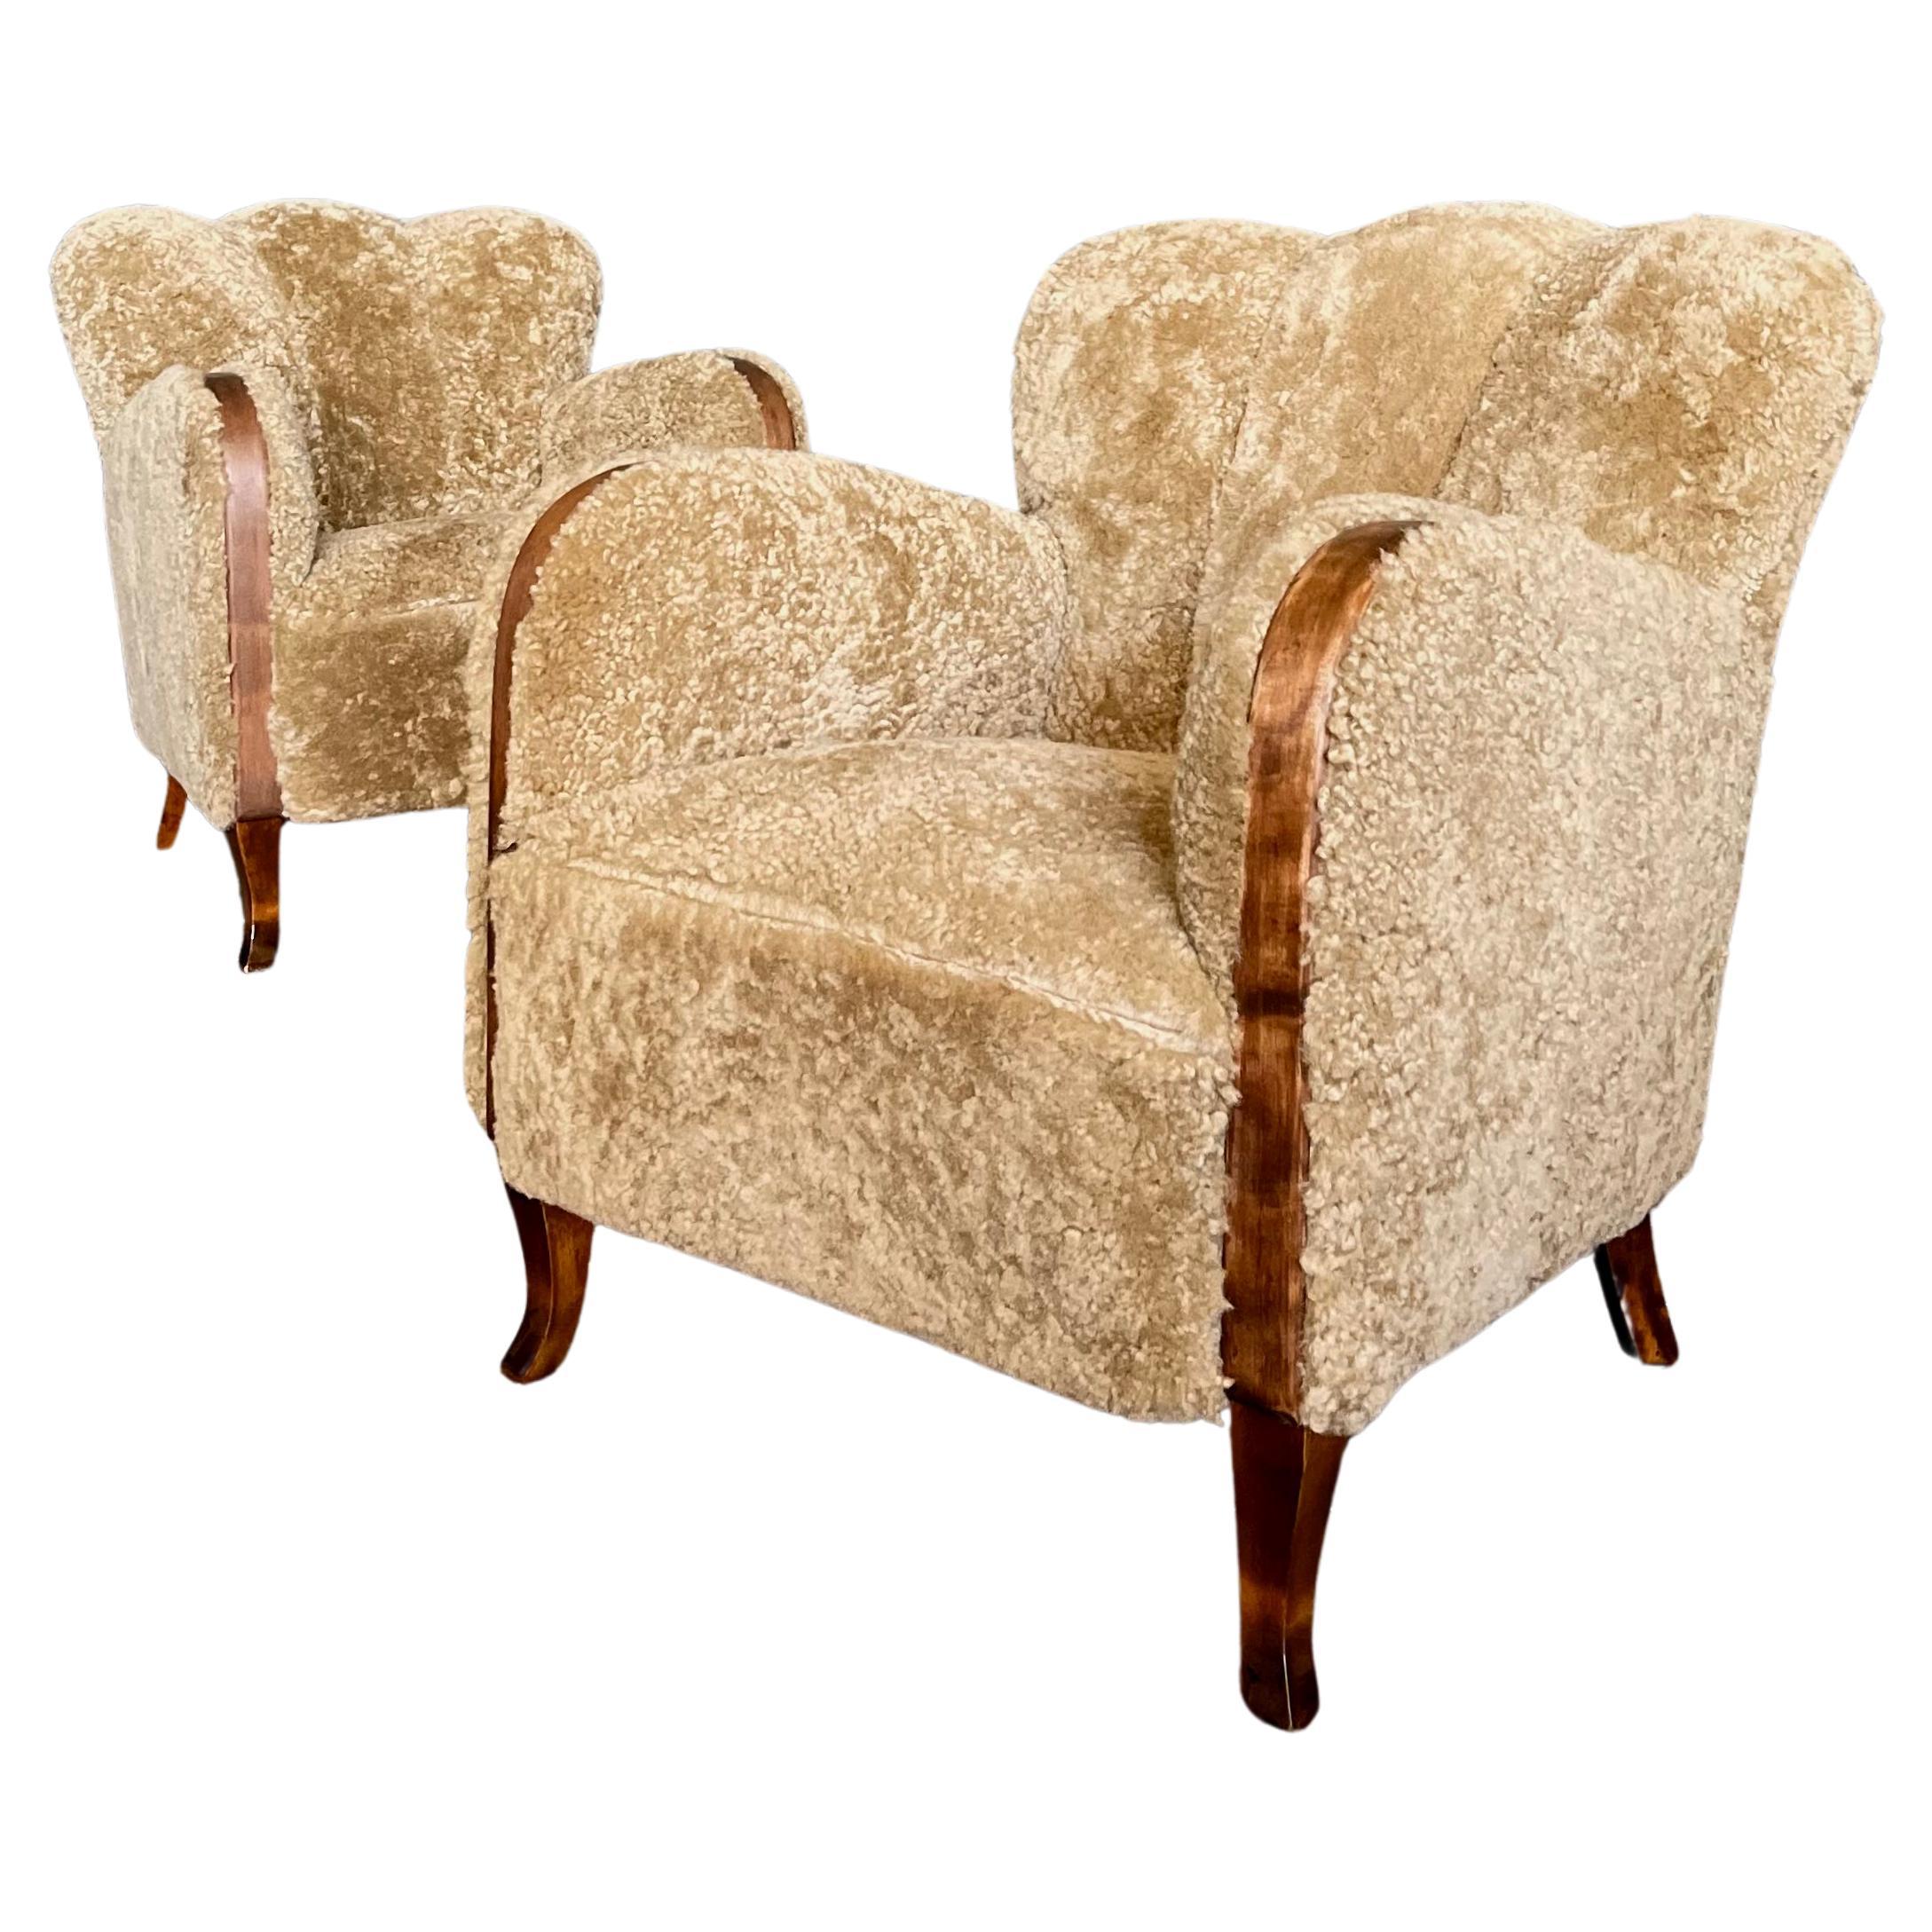 Vintage Scandinavian Sheepskin Art Deco Lounge Chairs, Danish, Shearling